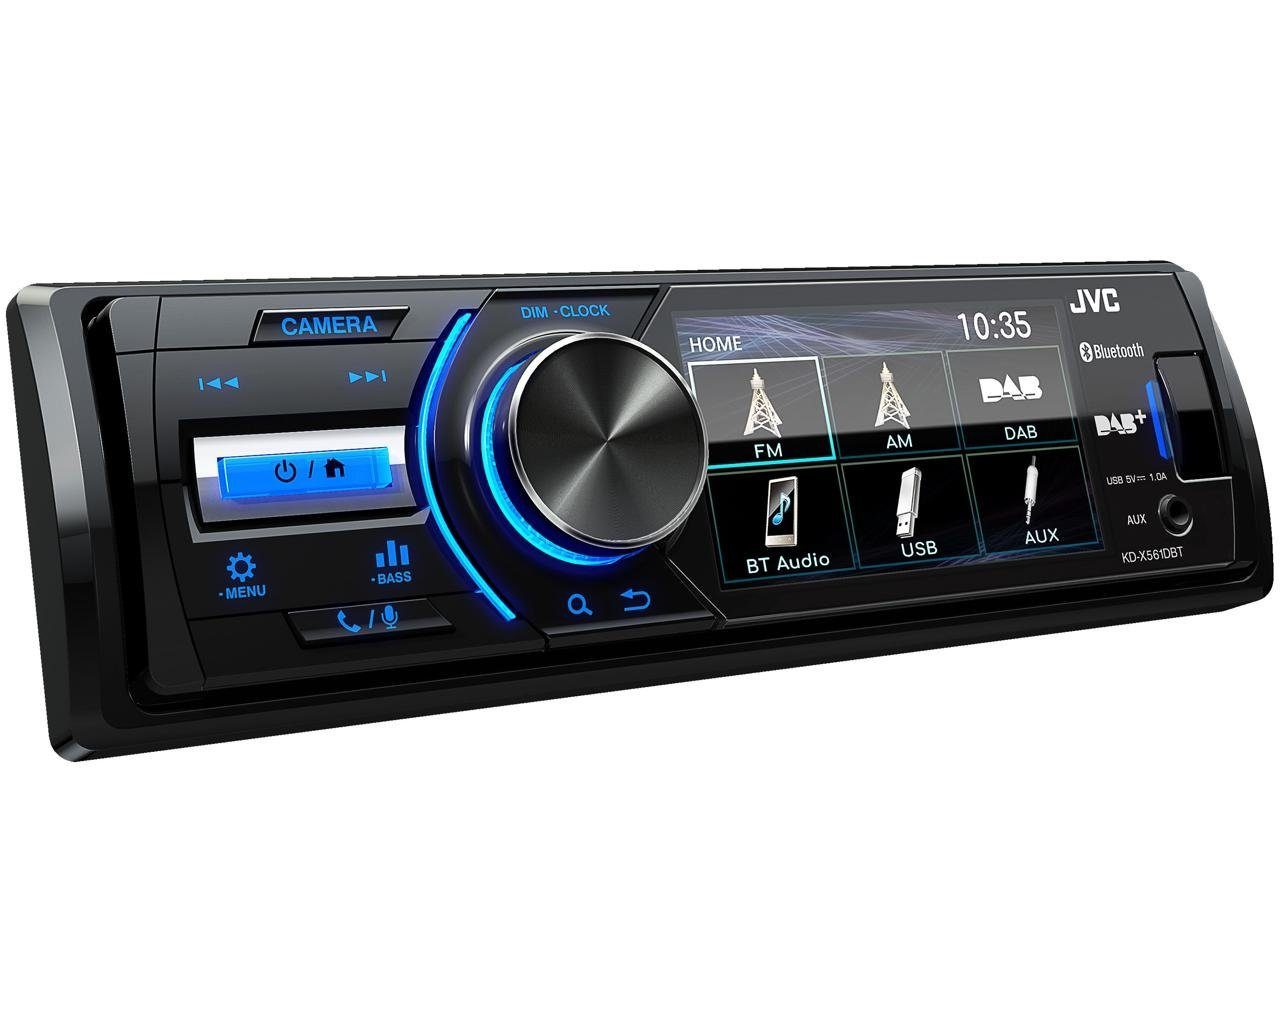 6 (Digitalradio für Autoradio Radio TFT JVC (DAB), 45 W) DSX Golf USB VW Bluetooth DAB+